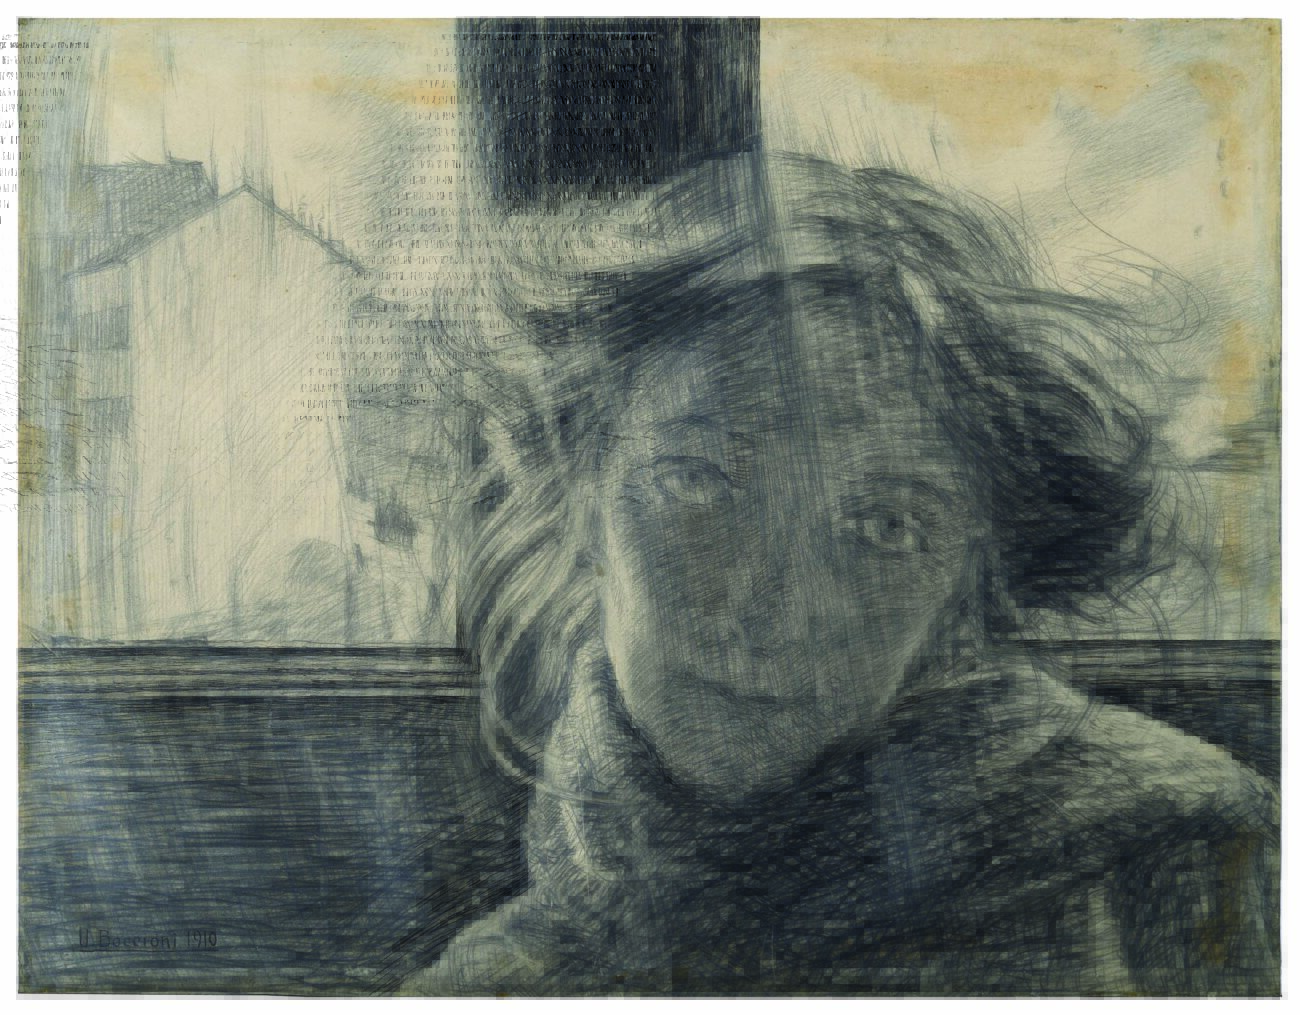 Umberto Boccioni, Against the Light (Controluce), 1910